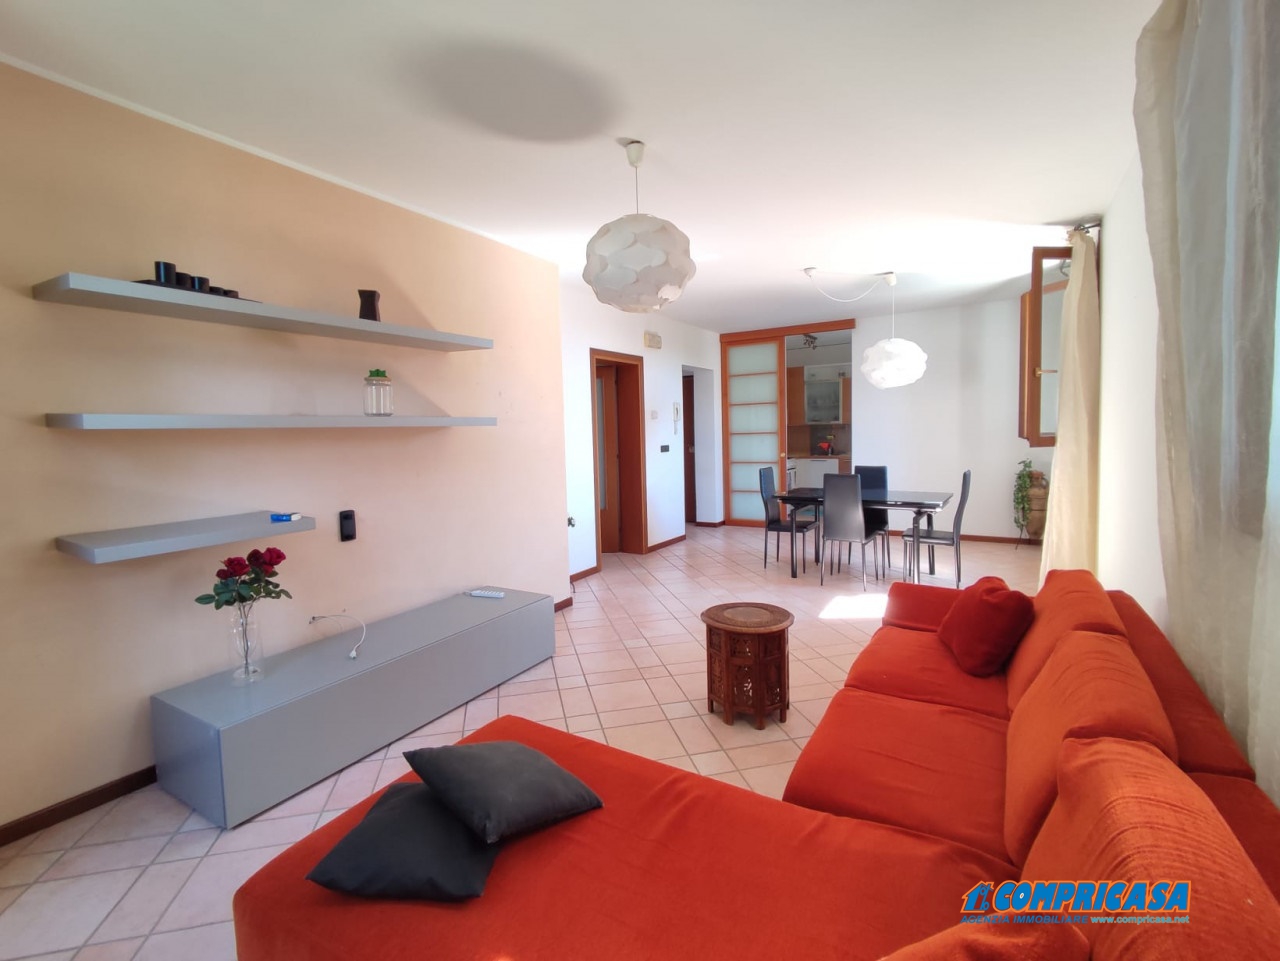 Appartamento in vendita a Montagnana, 4 locali, prezzo € 125.000 | PortaleAgenzieImmobiliari.it